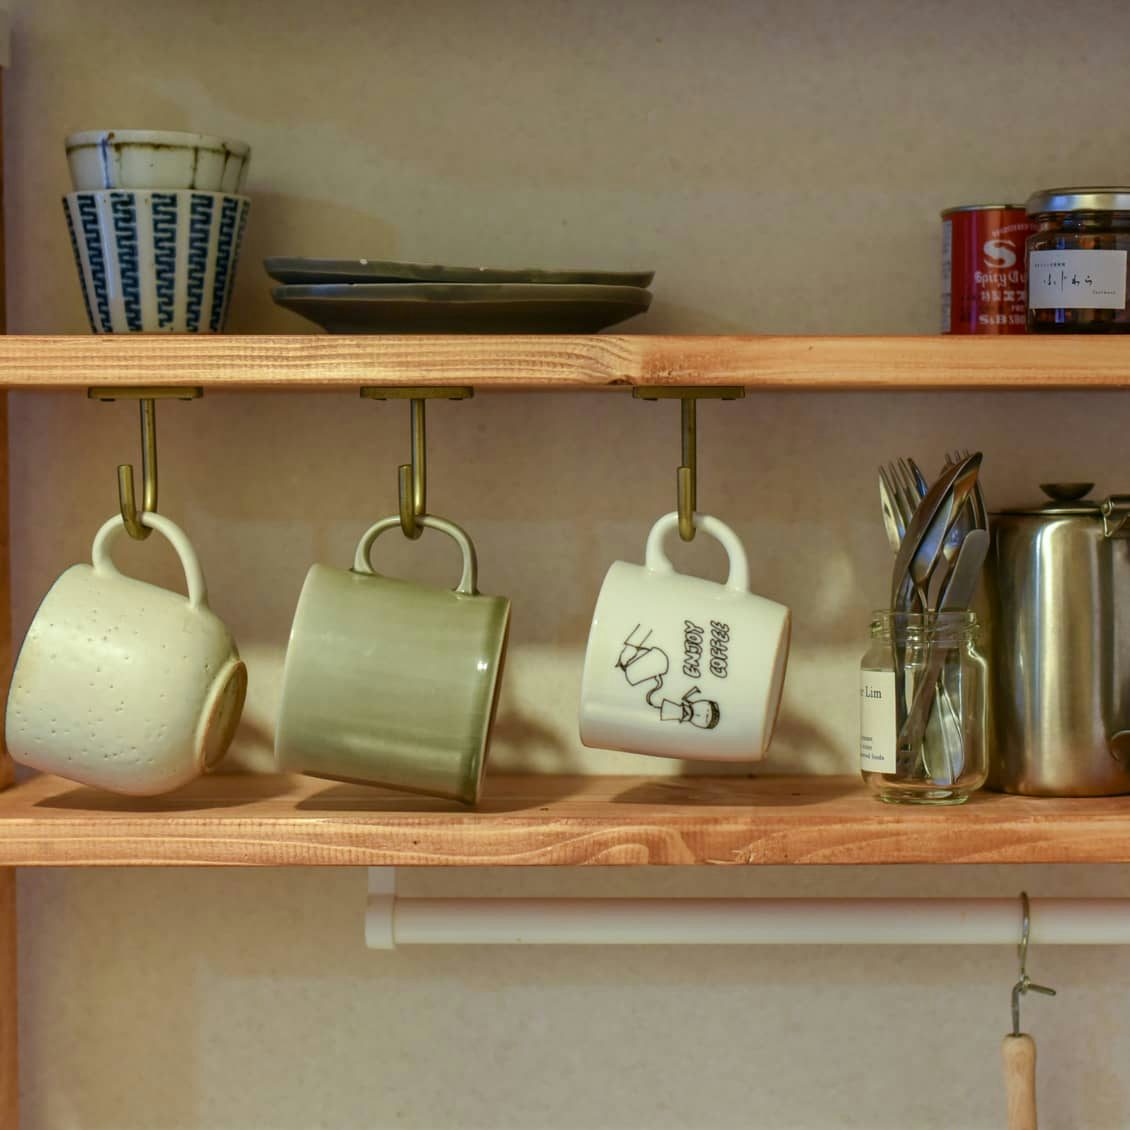 一人暮らしの食器収納アイデアシンク下 Diyなどの収納実例も 北欧 暮らしの道具店